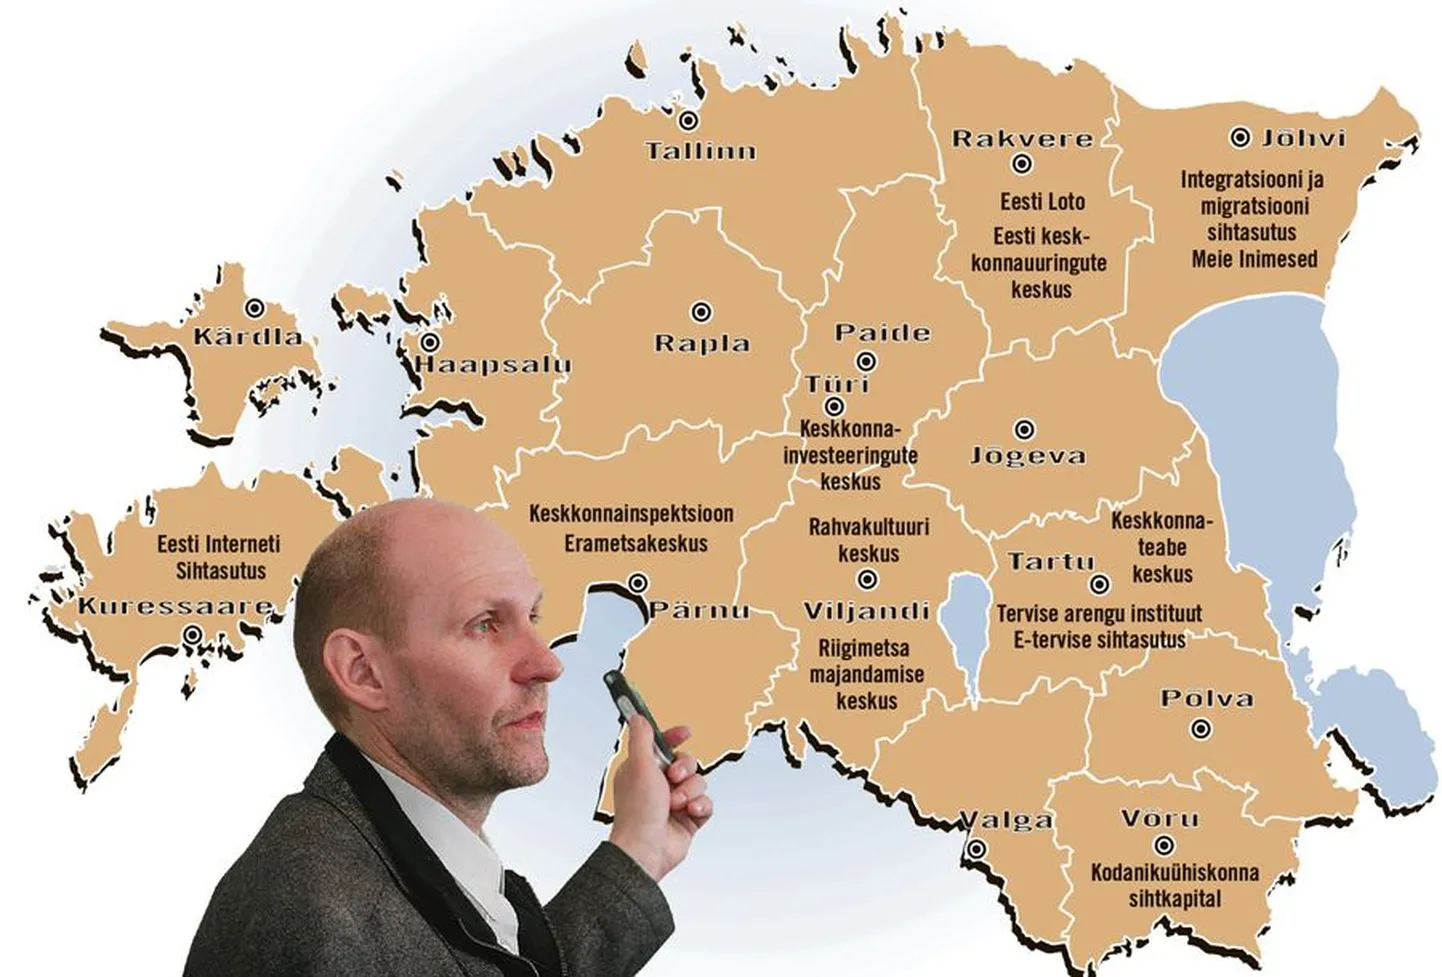 Põllumajandusminister Helir-Valdor Seeder ütles, et 13 riigiasutust Eestis ringi paigutades võttis ta arvesse piirkondade eripära. Samas on ta valmis kõigi asutuste paiknemise üle läbirääkimisi pidama, sest ta tahtiski diskussiooni algatada.